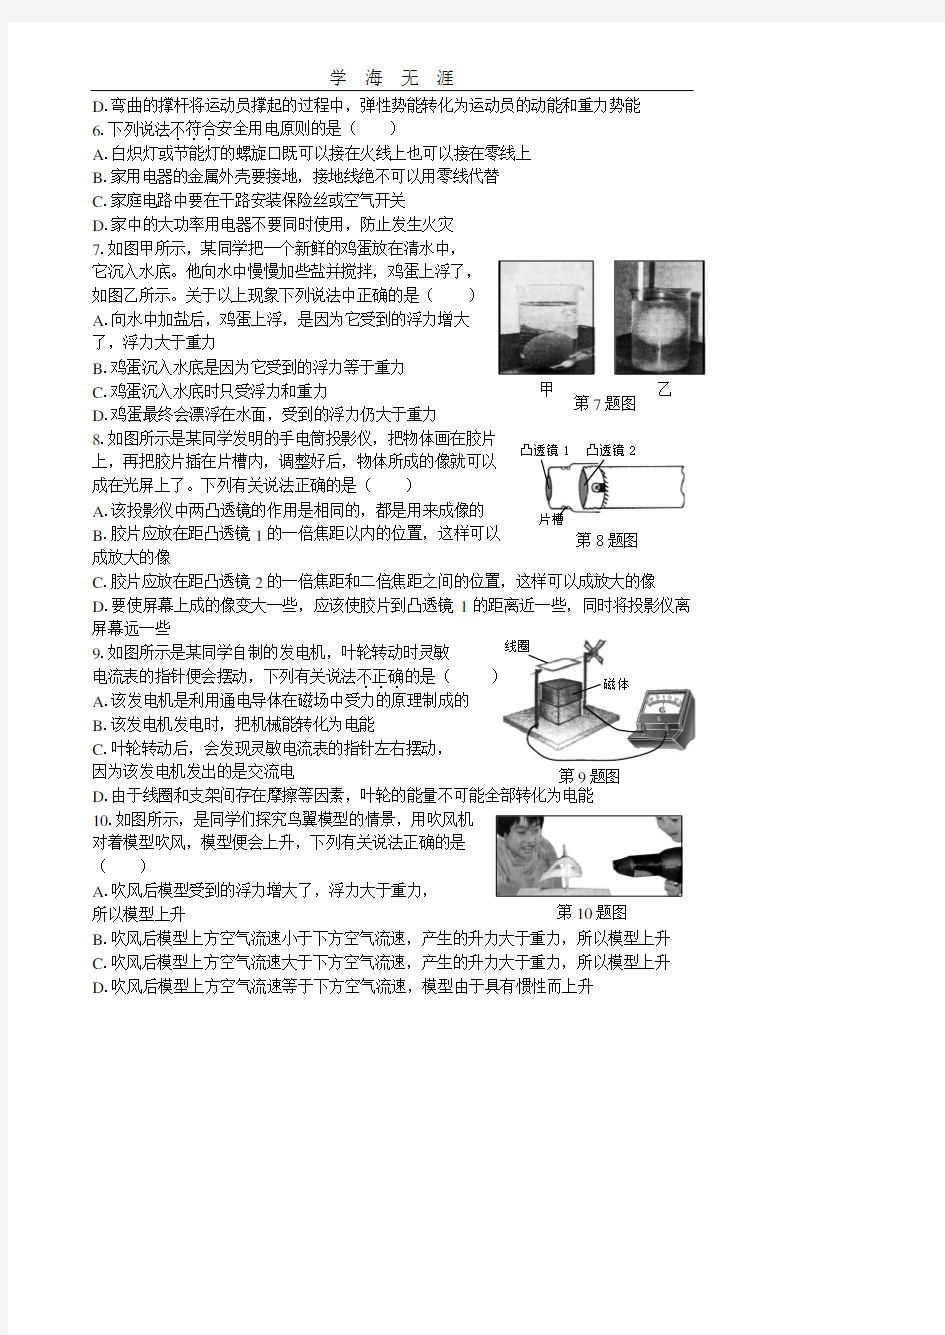 2012年哈尔滨中考物理模拟题(金继勇2012年命题员).pdf